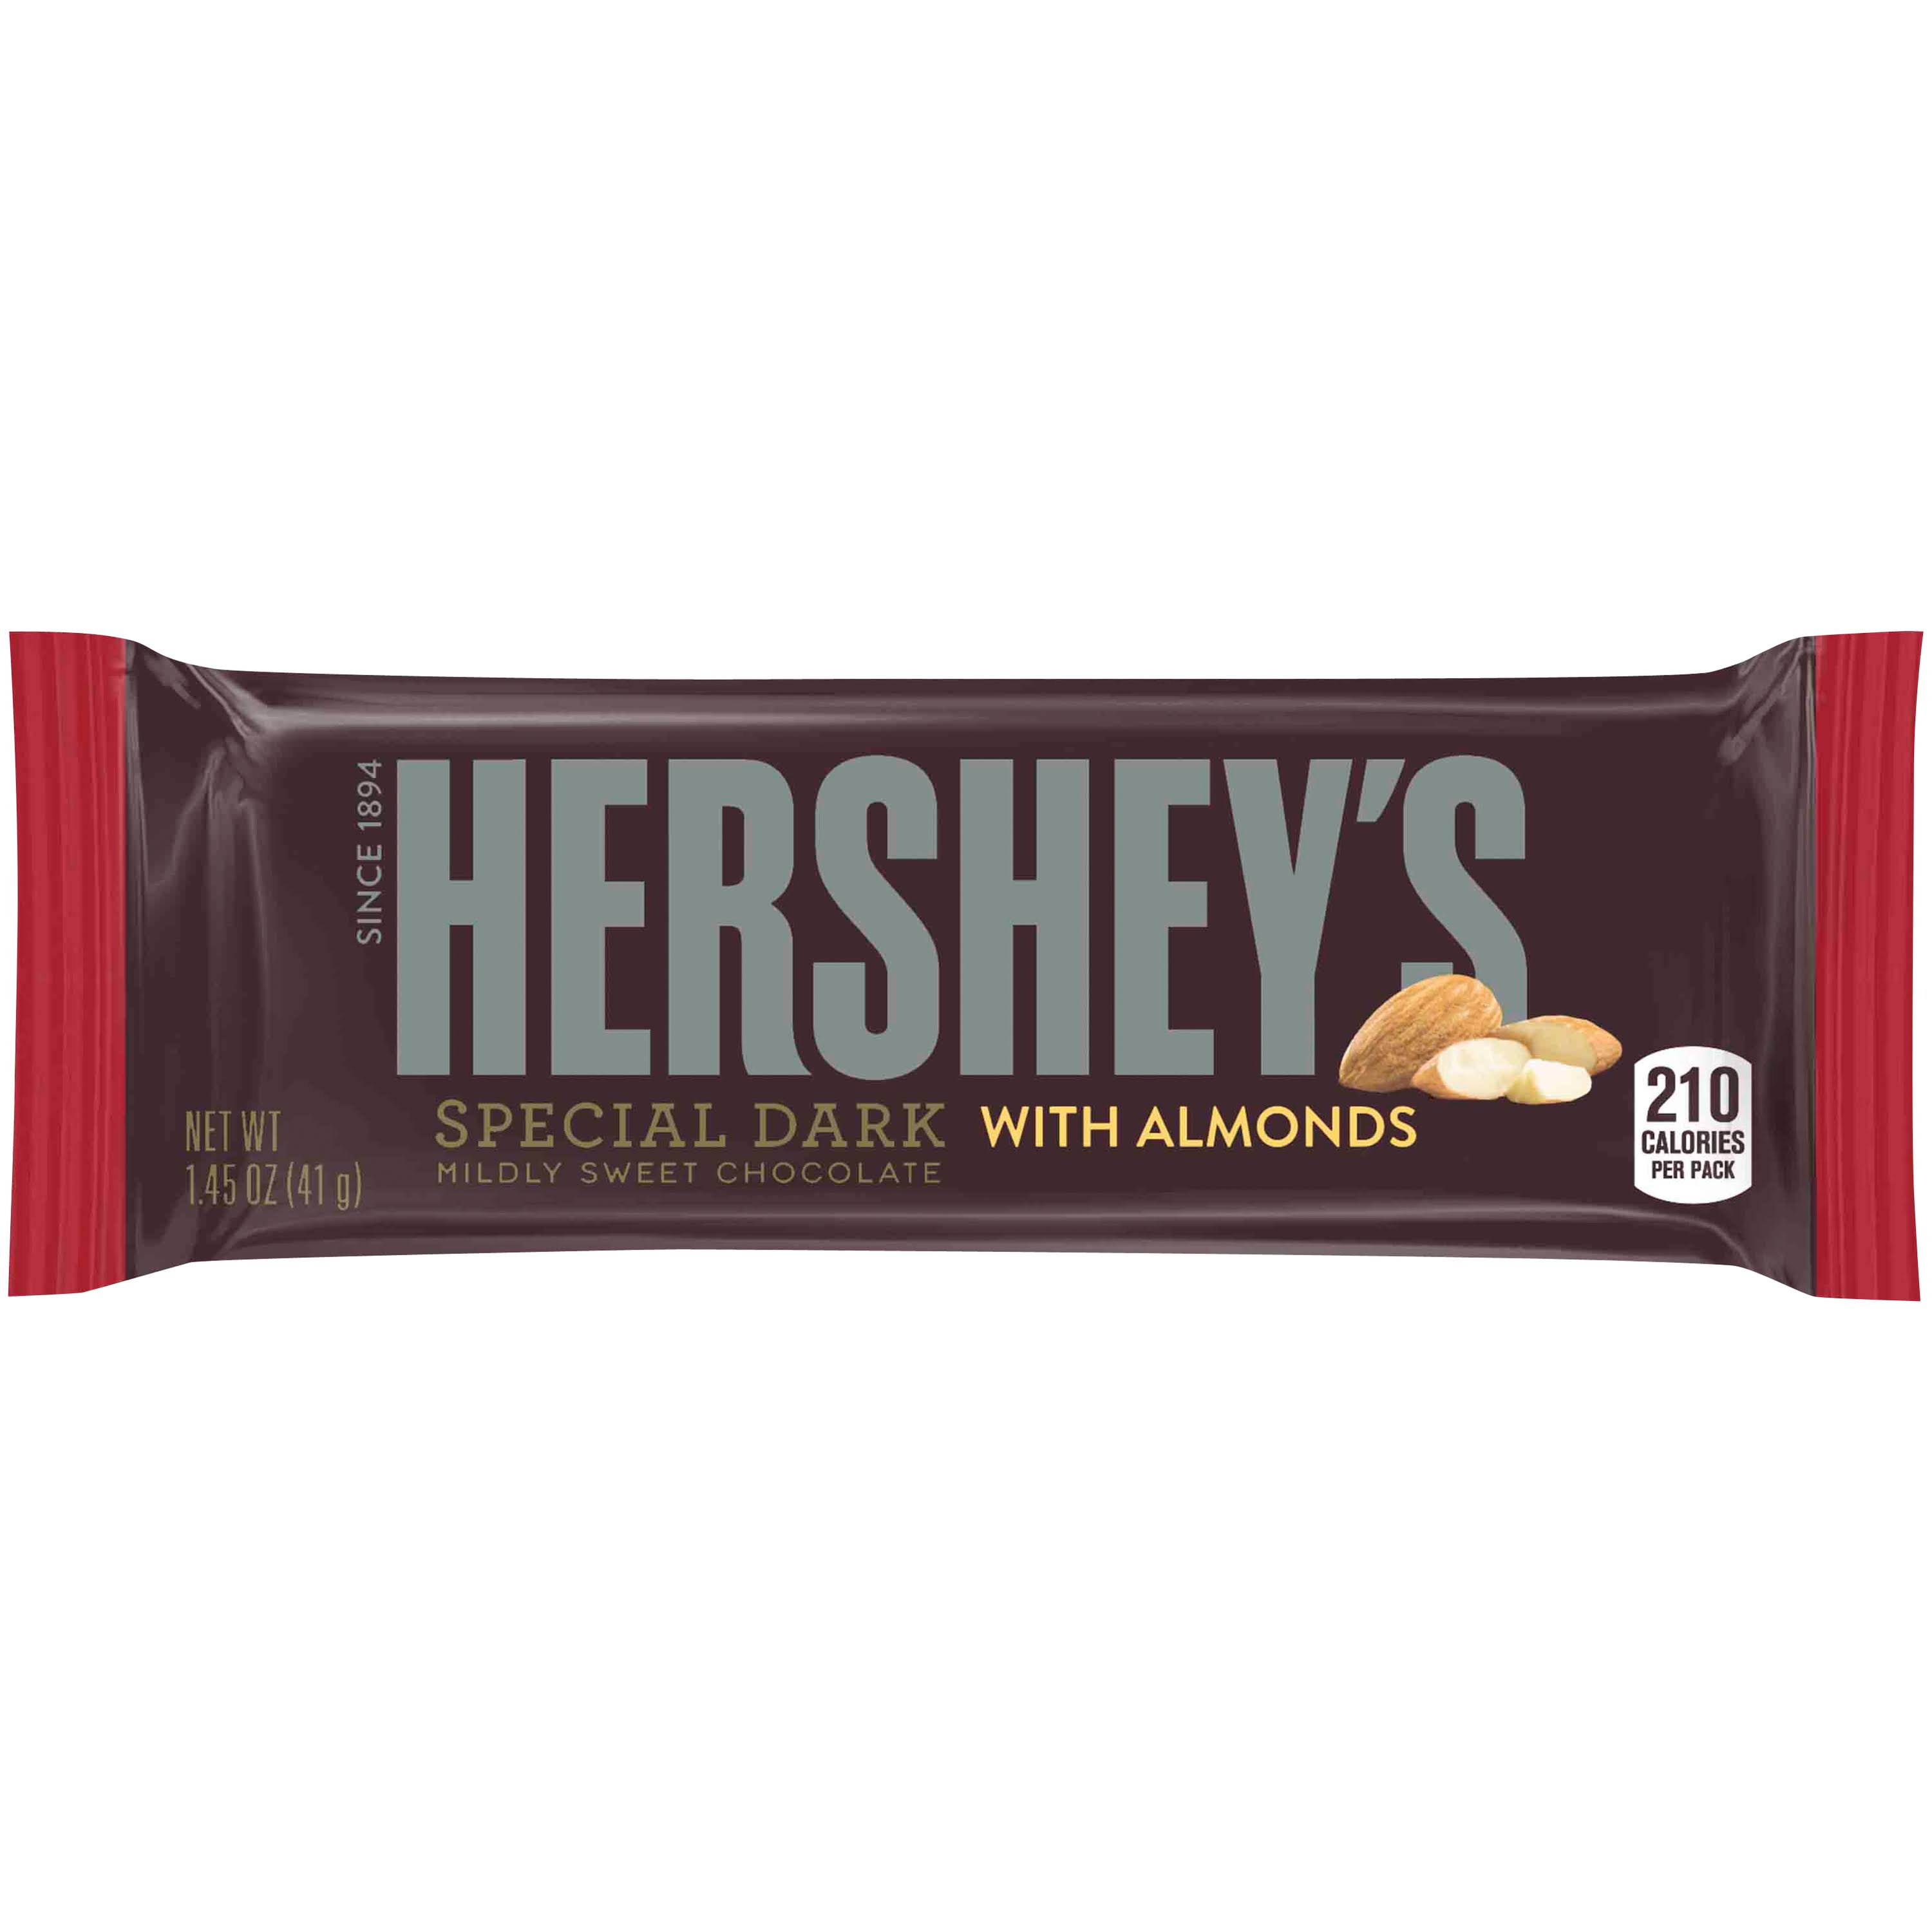 Hershey's Special Dark Chocolate Bar - 1.45oz